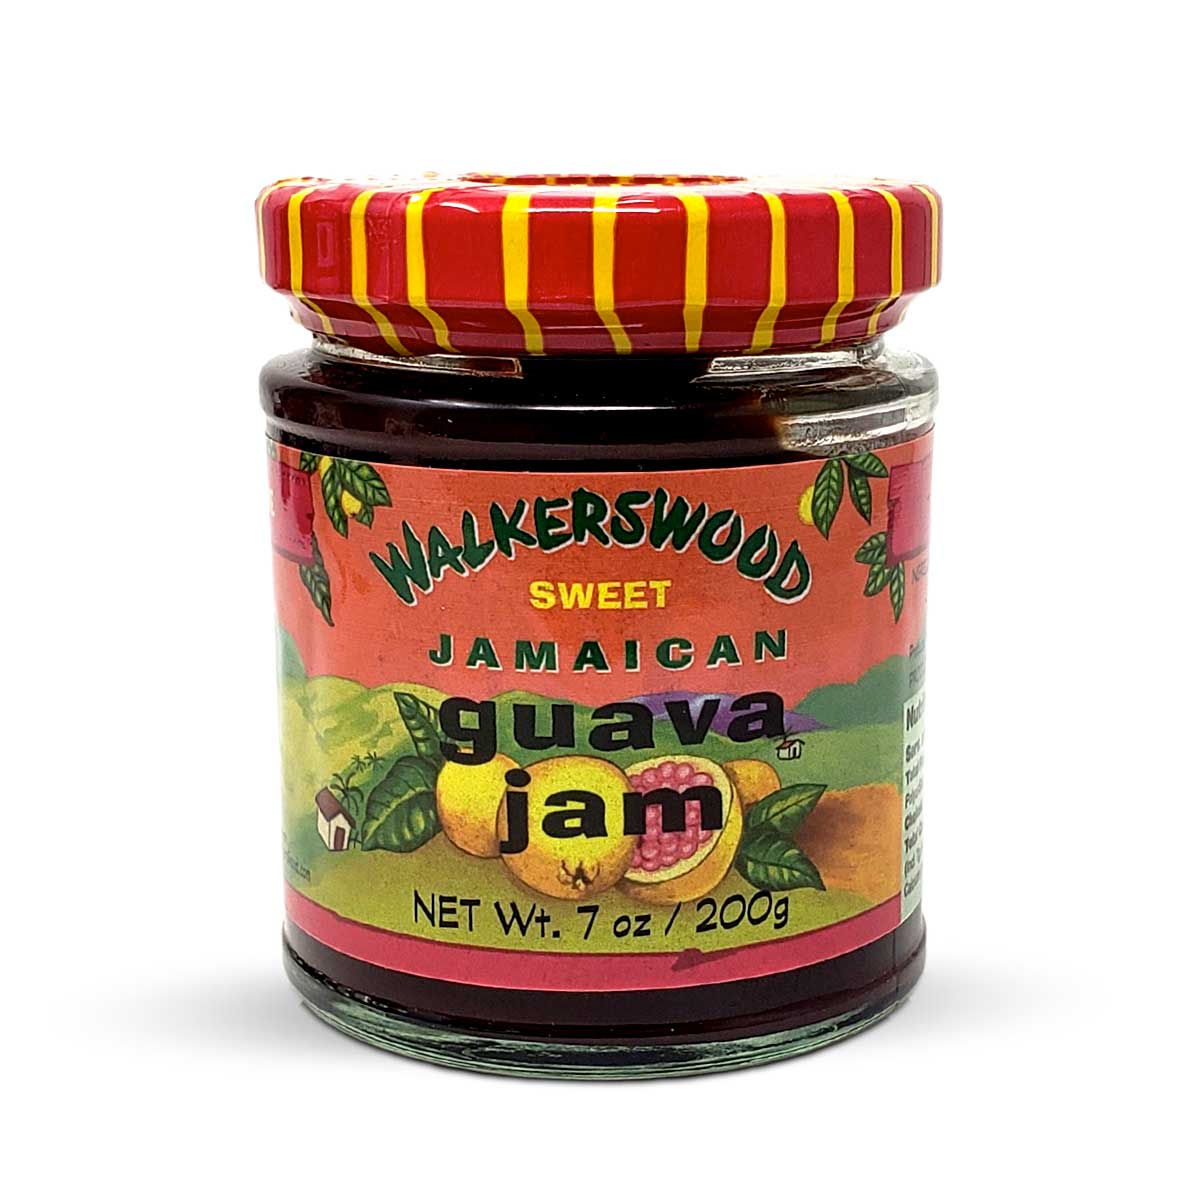 Walkerswood Jamaica Guava Jam, 7oz